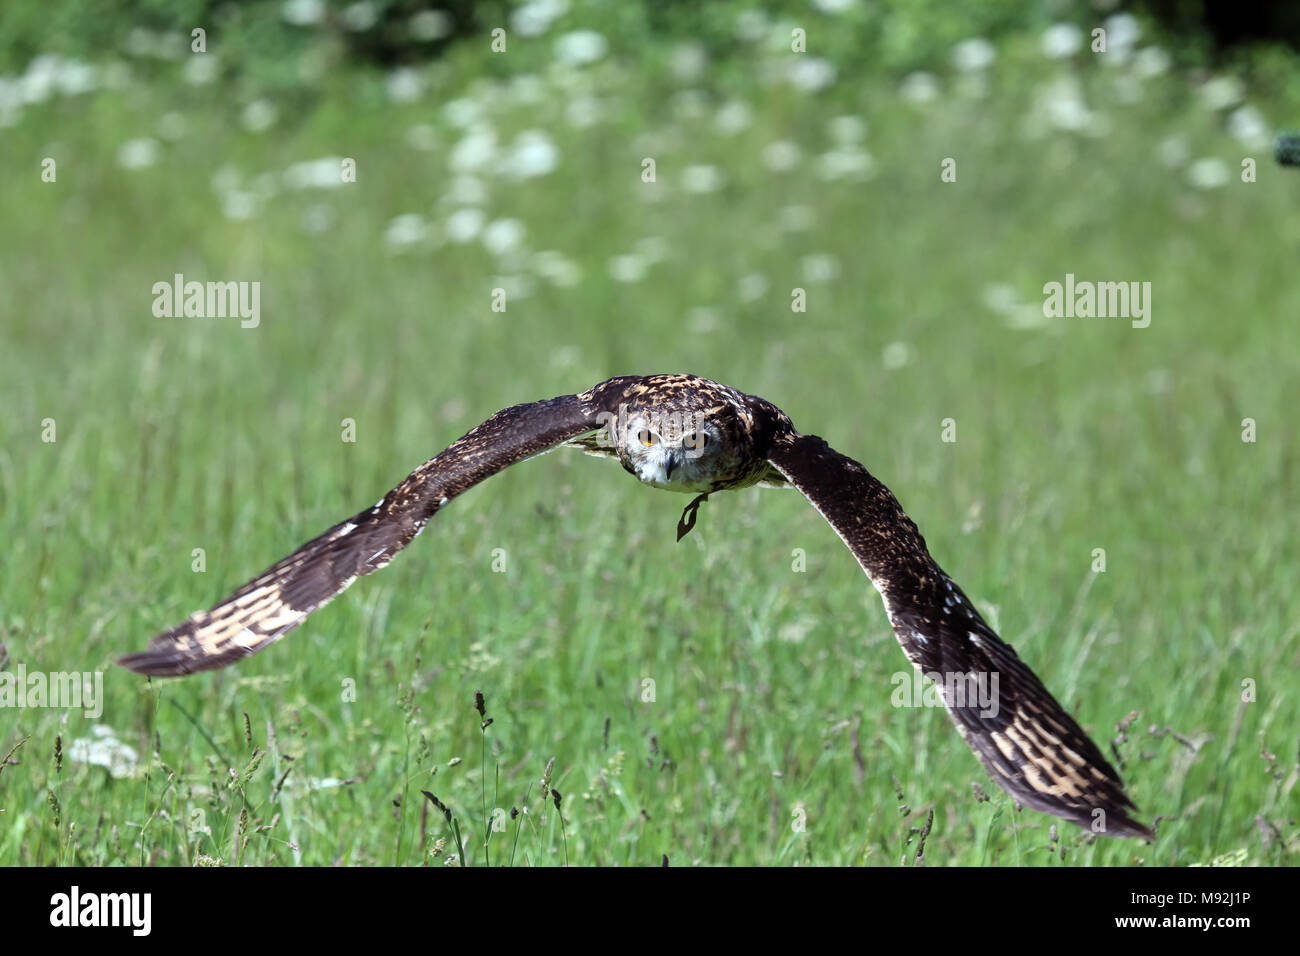 Captive spotted eagle-owl (Bubo africanus), Bedfordshire, UK. Stock Photo